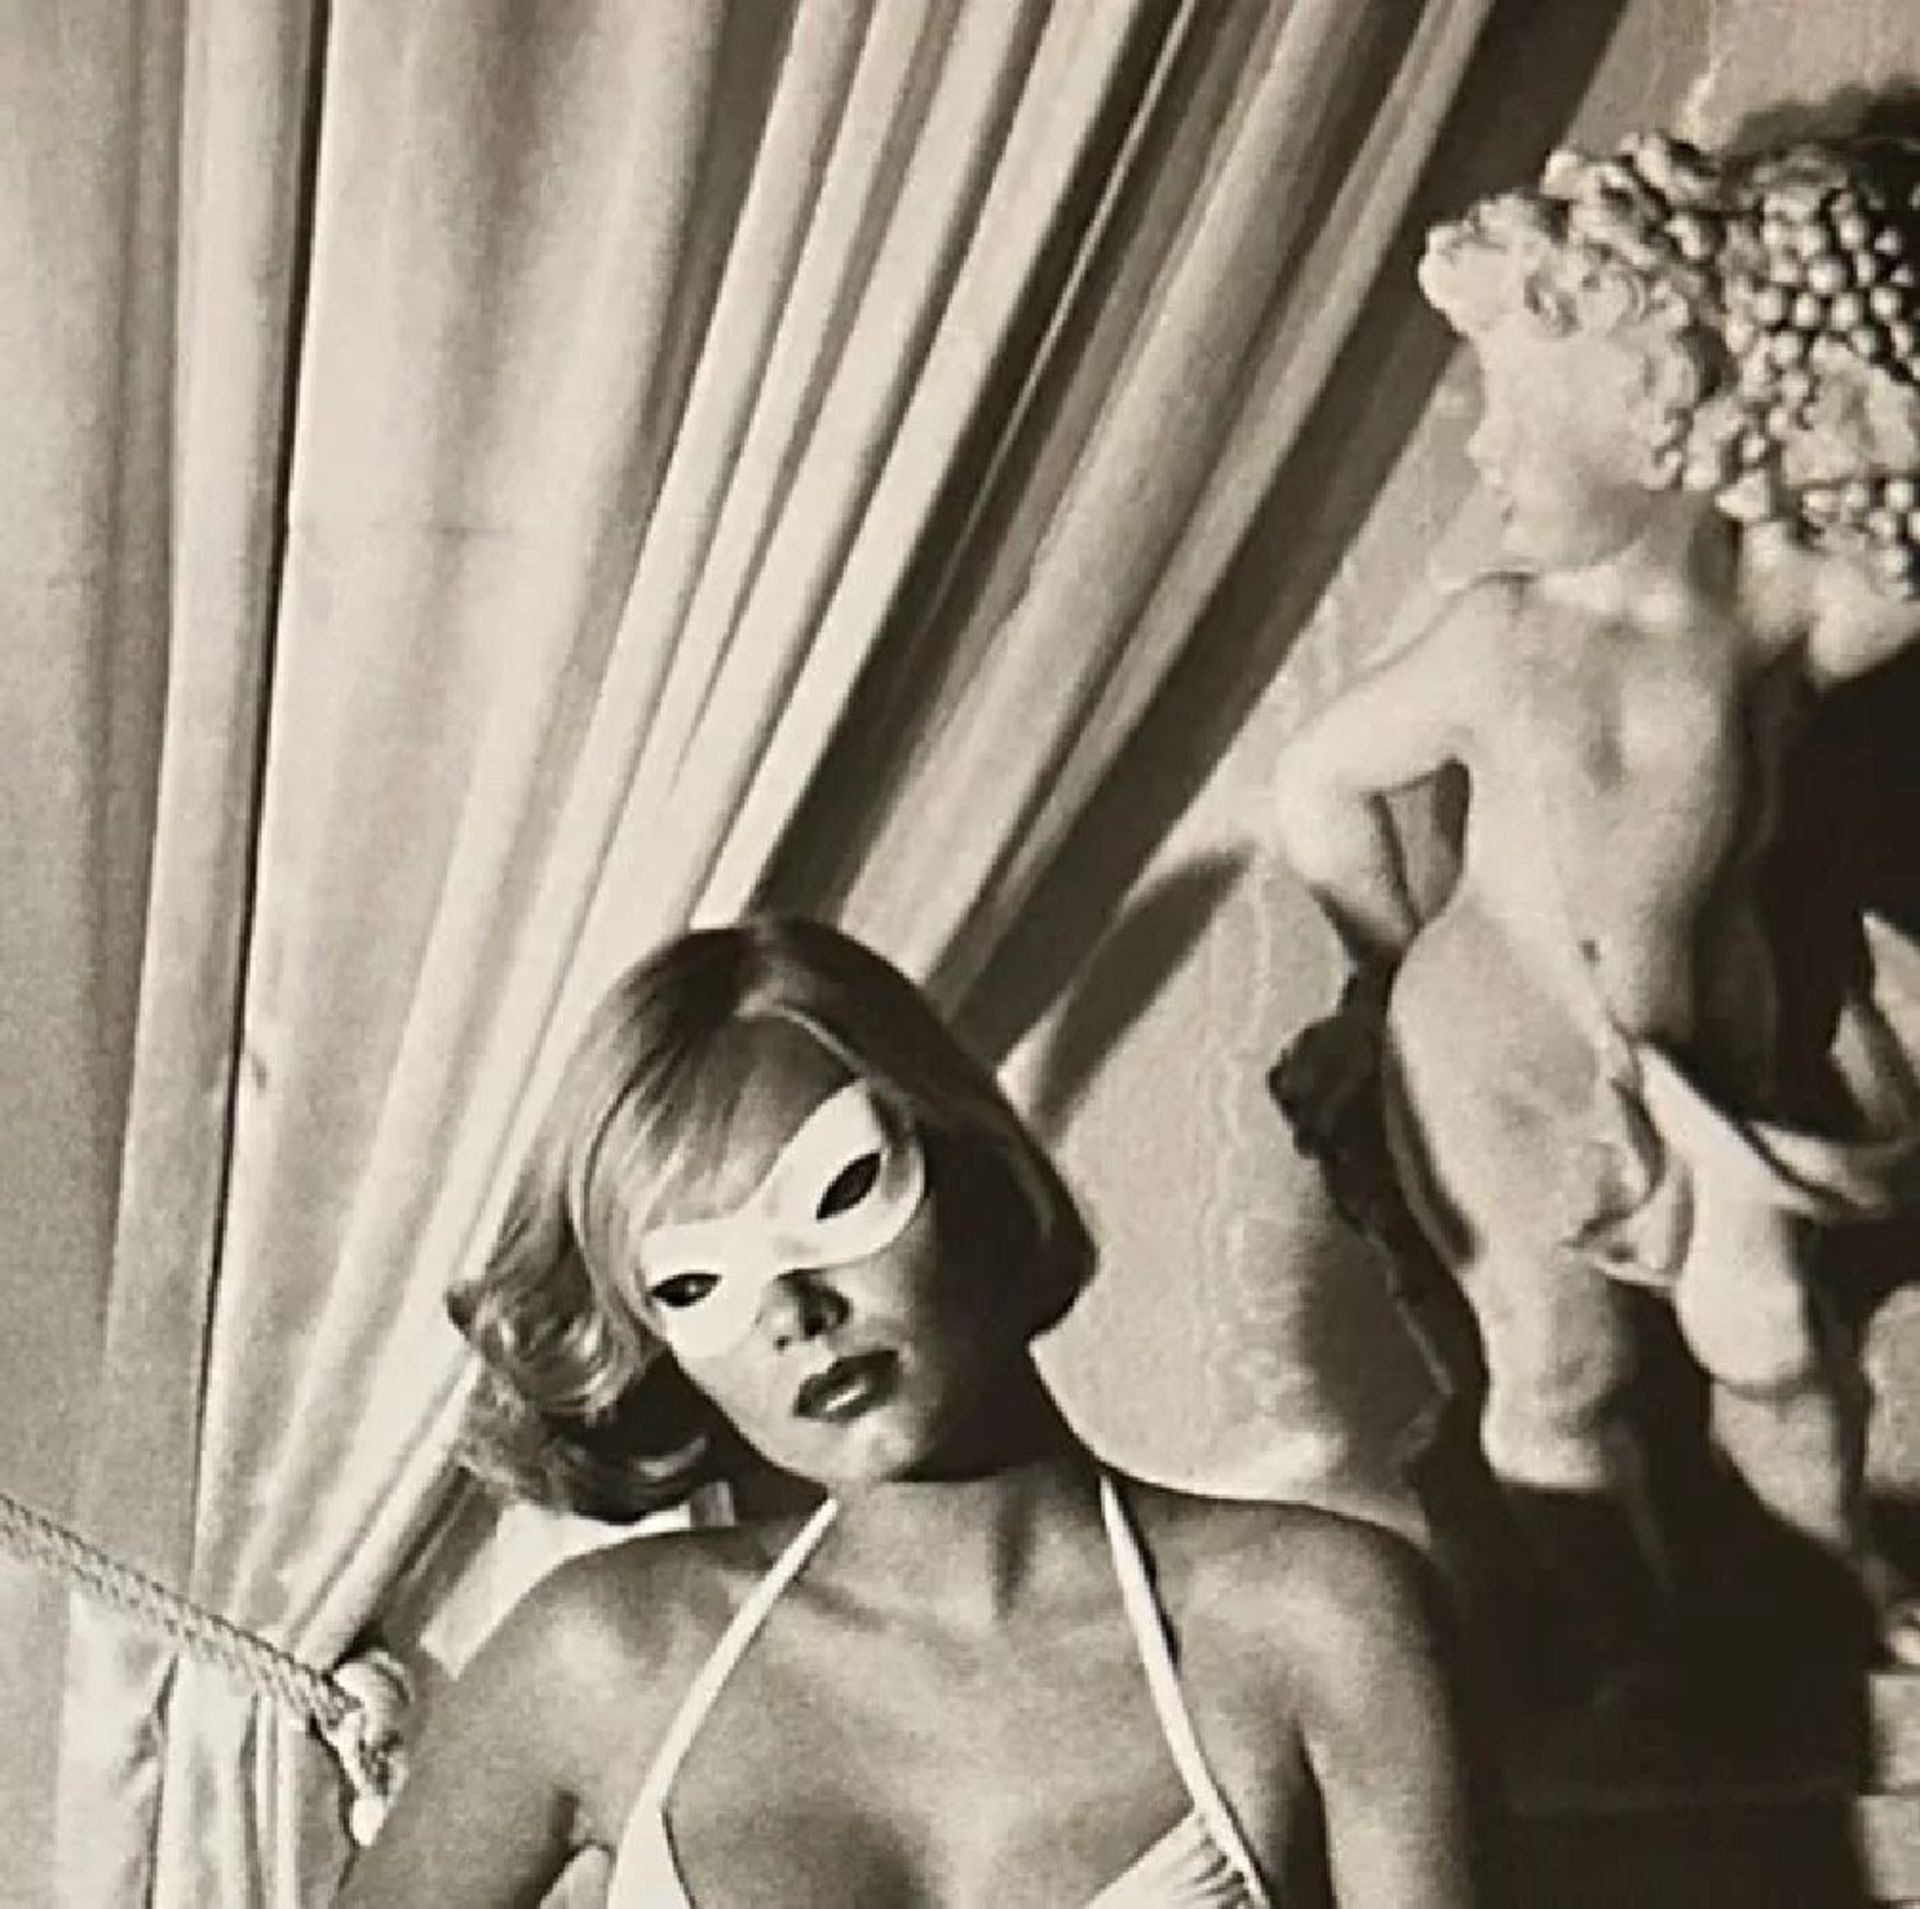 Helmut Newton "Big Nude I" Print. - Image 3 of 5